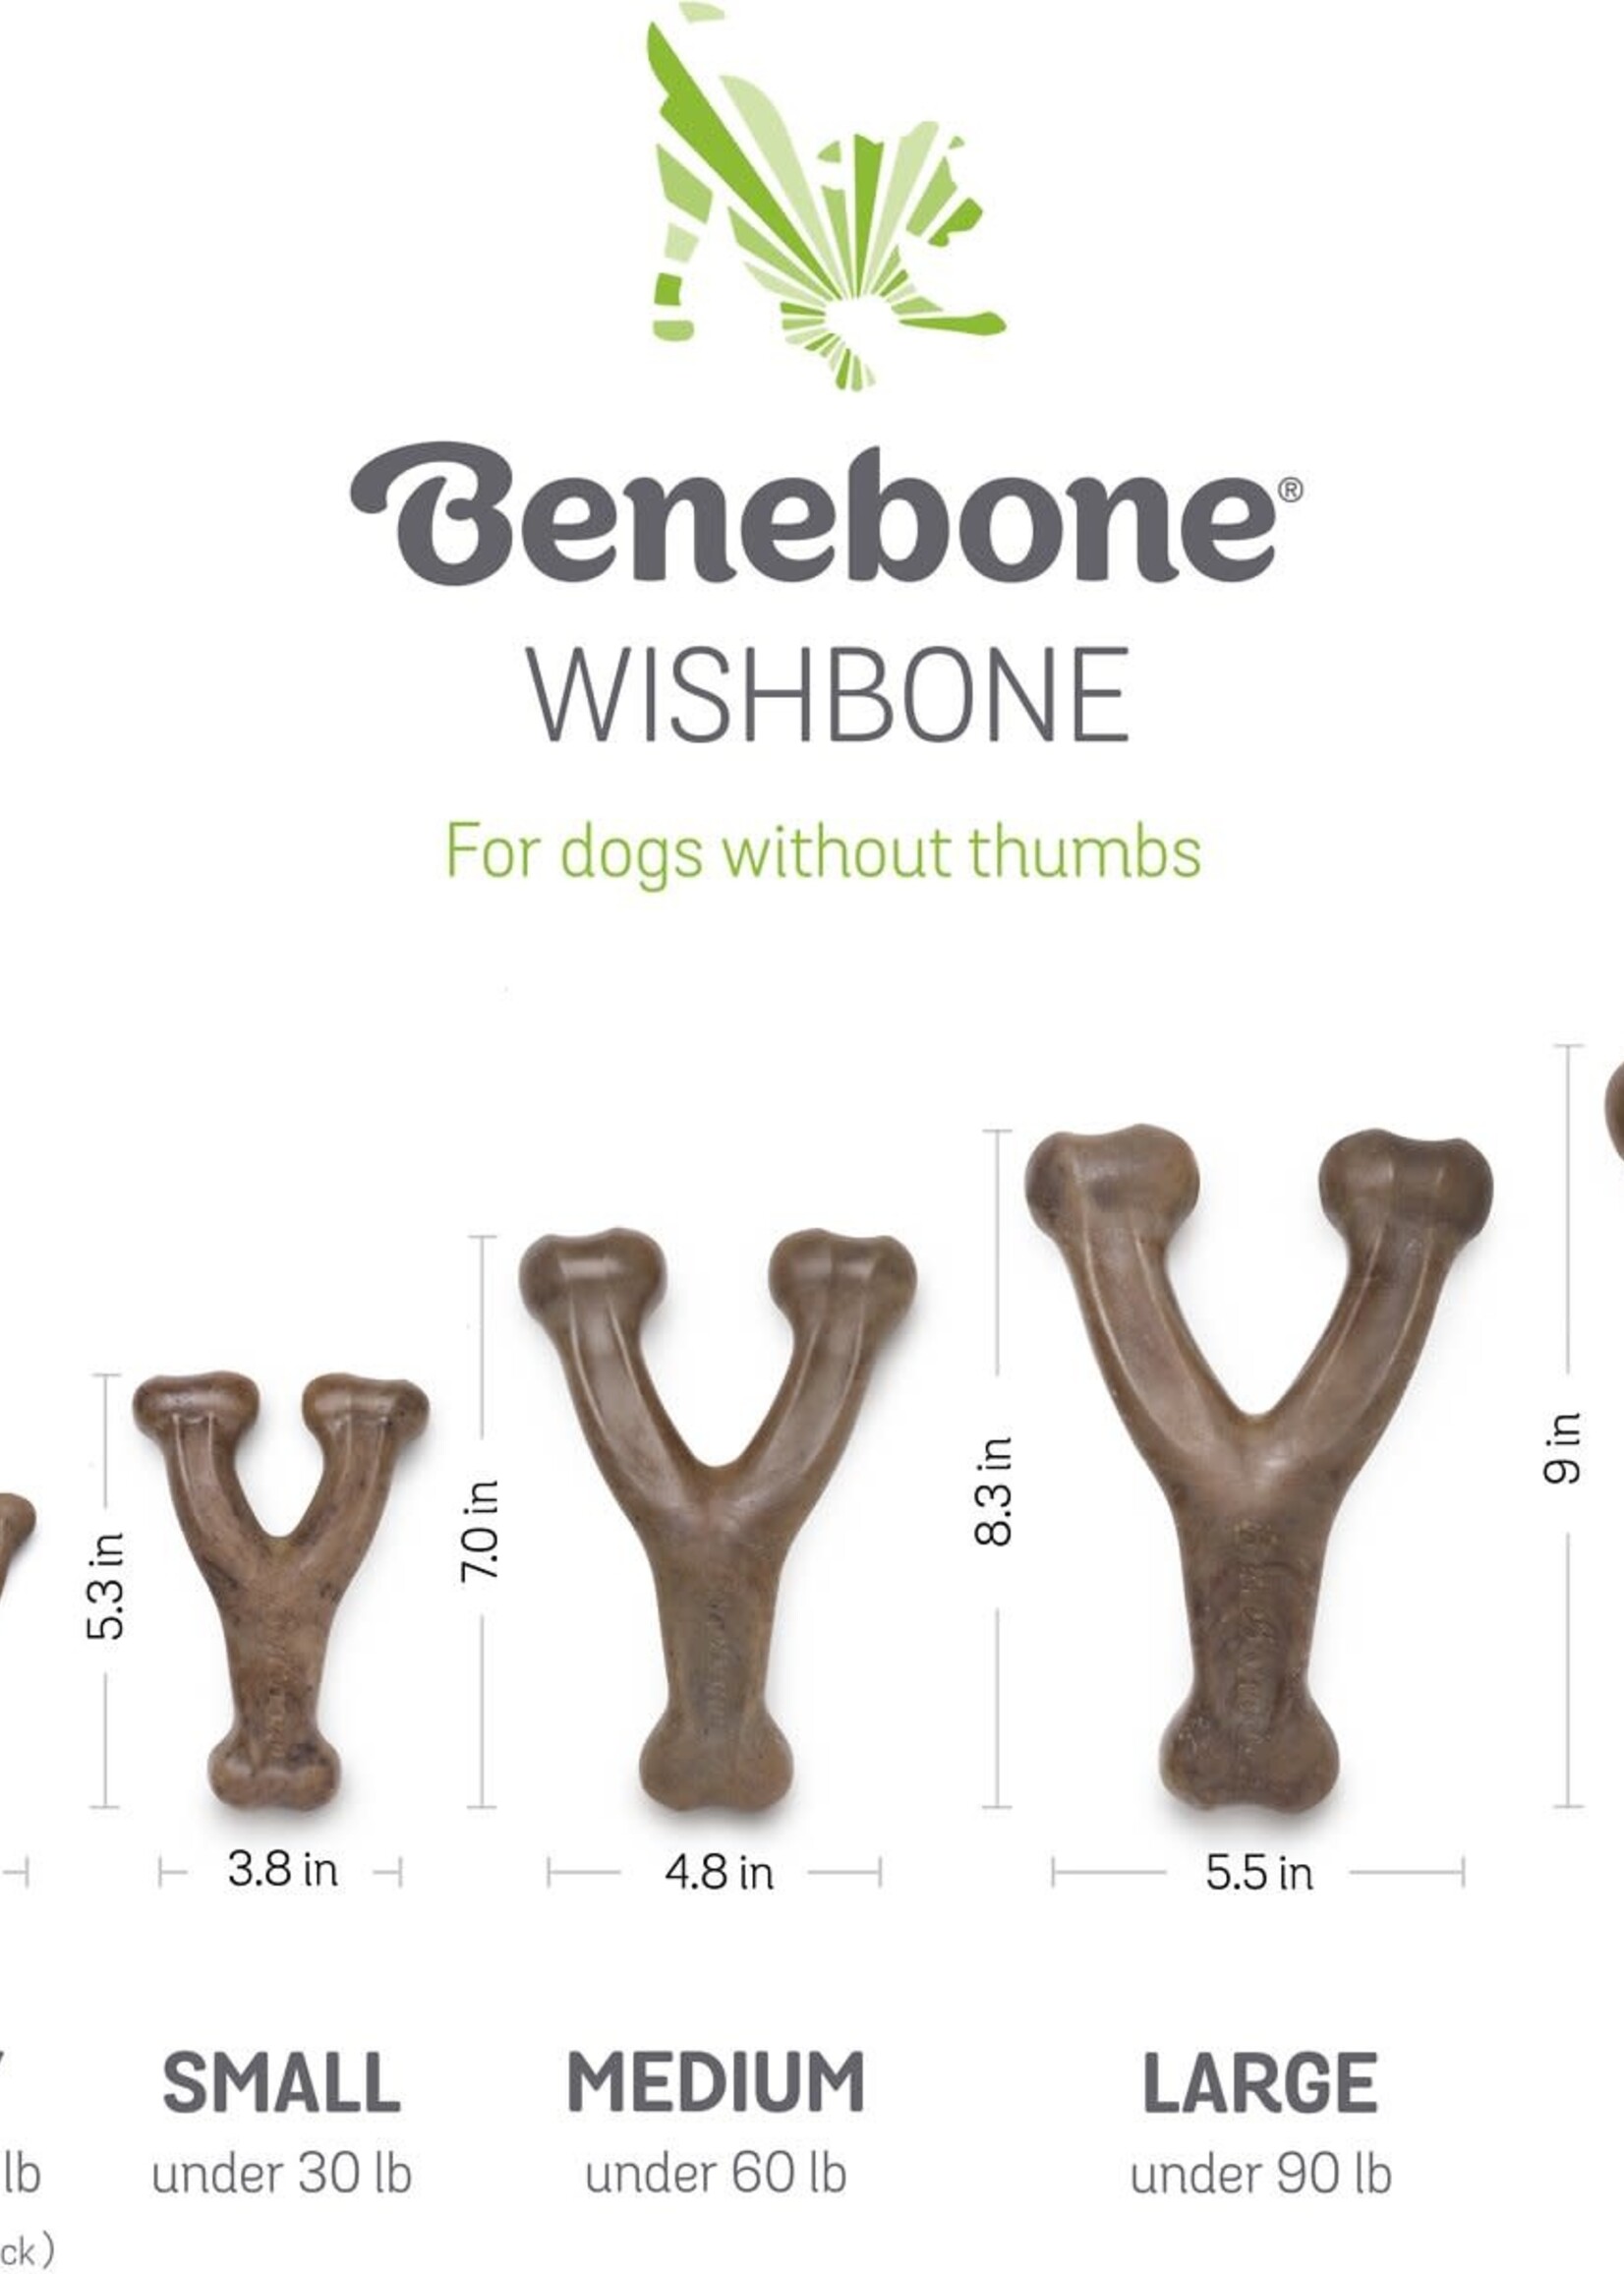 Benebone Benebone Chicken Flavor Wishbone Tough Dog Chew Toy